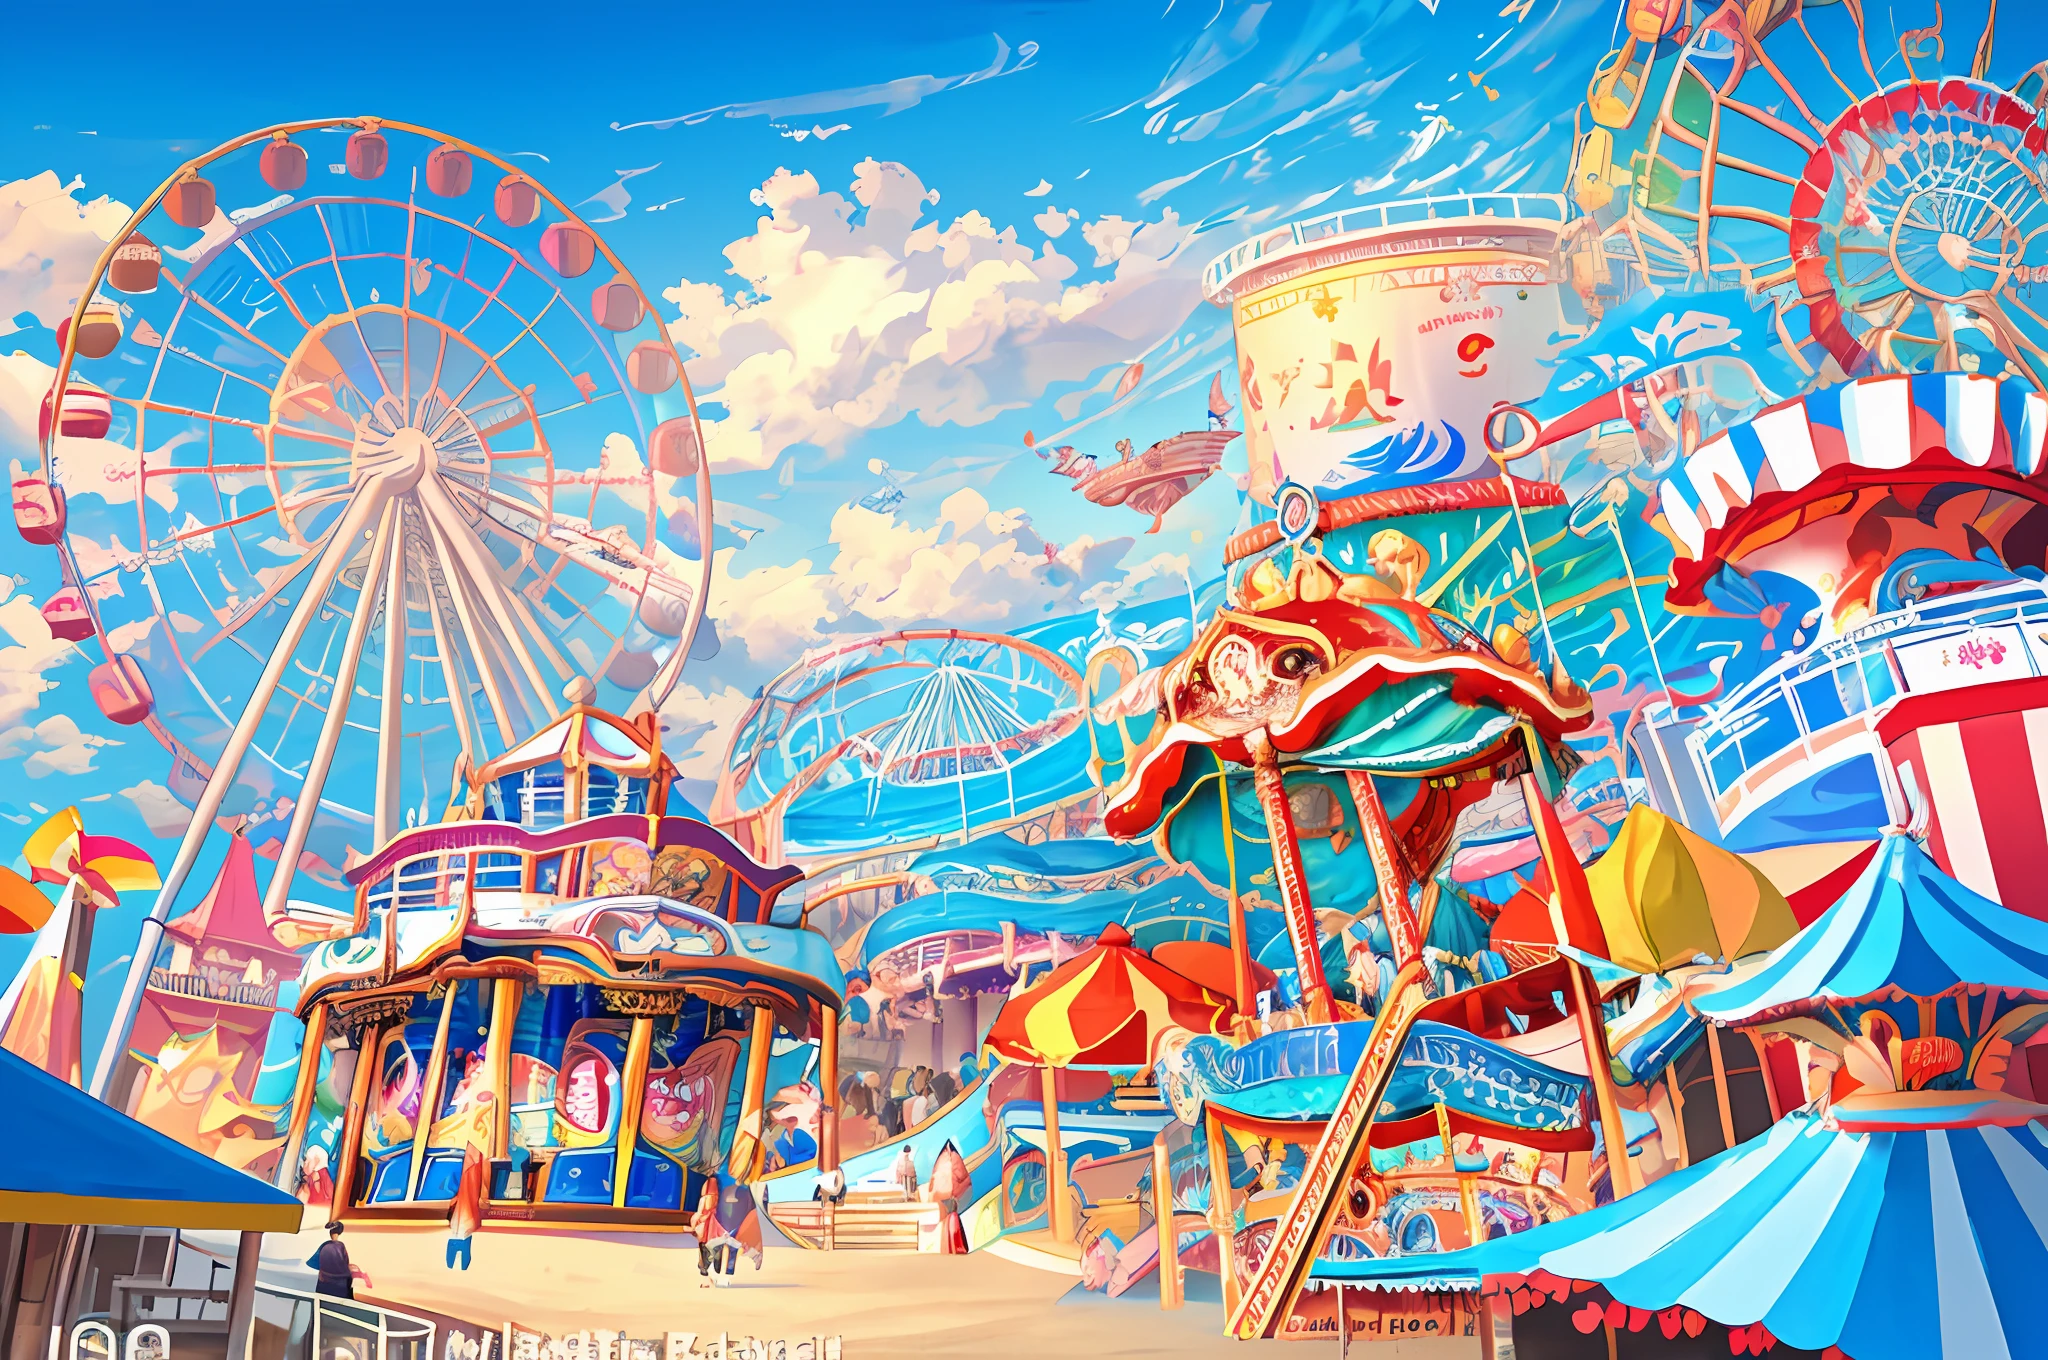 Bild eines Vergnügungsparks am Strandpier aus den 1930er Jahren, (roller coaster:1.3), Riesenrad, Karussell, Pavillons, Stände mit Essen und Karnevalsspielen, Beschäftigt mit Menschen